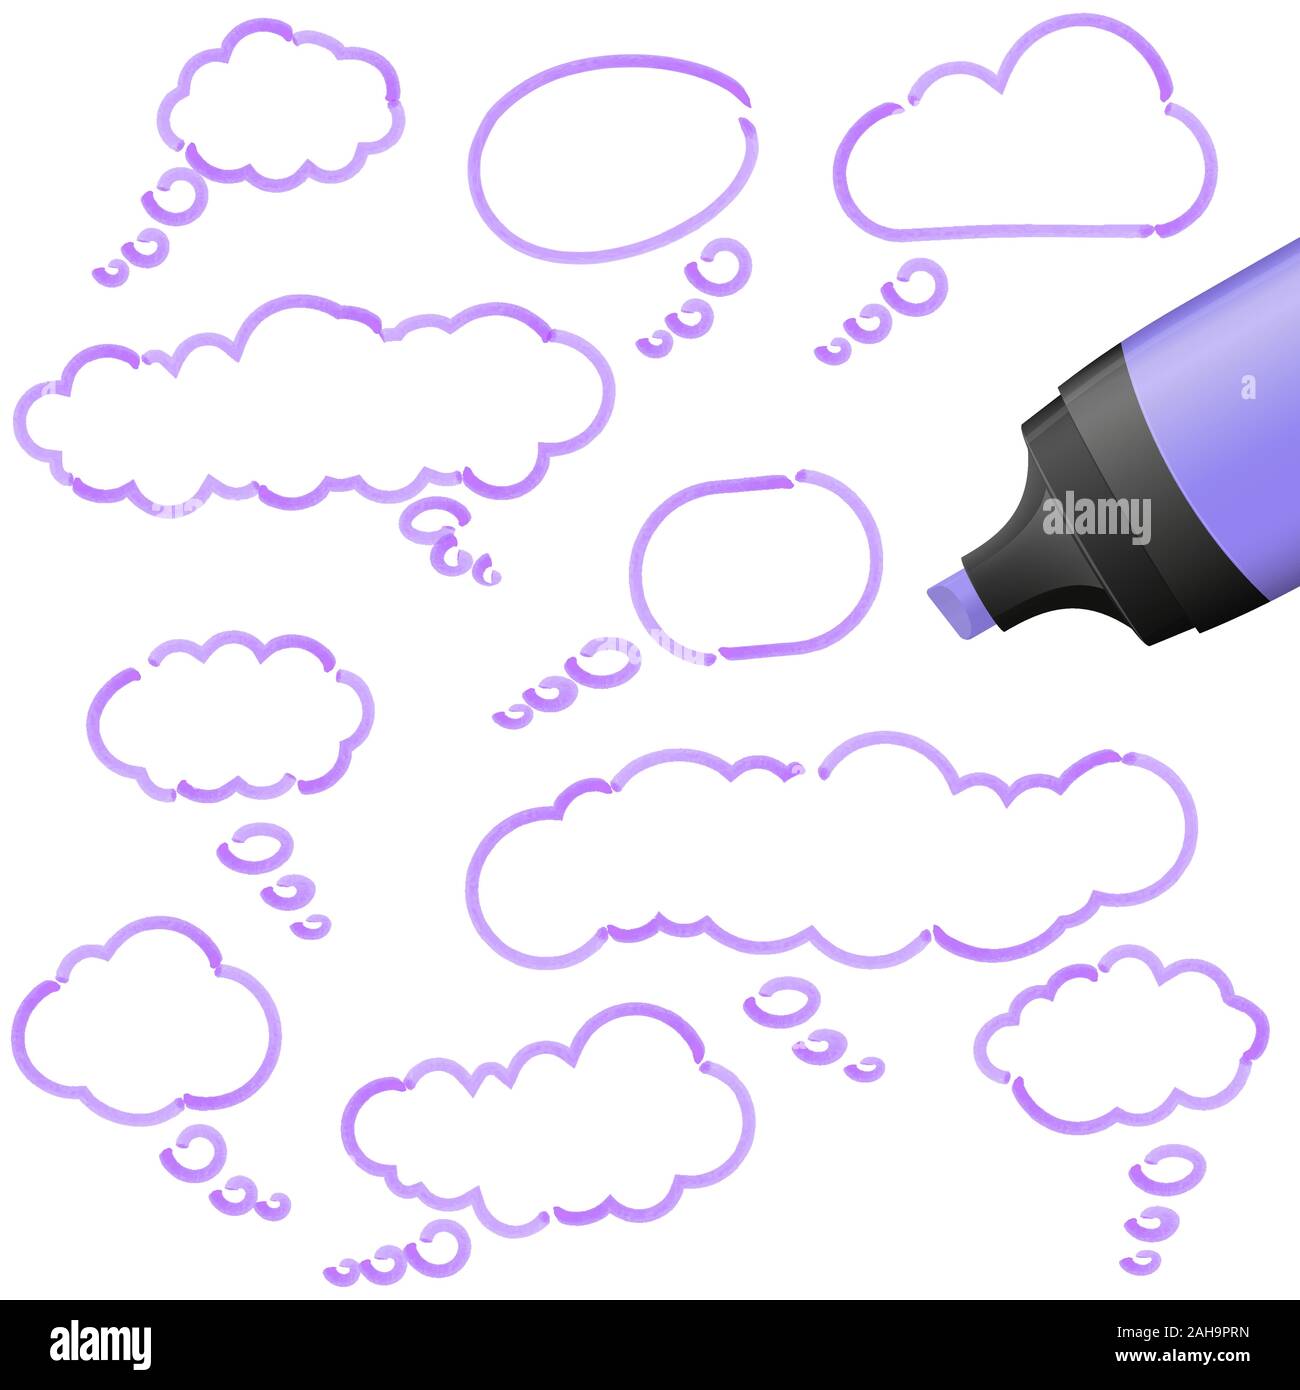 Illustration de bulles dessinées avec un surligneur de couleur violette Illustration de Vecteur